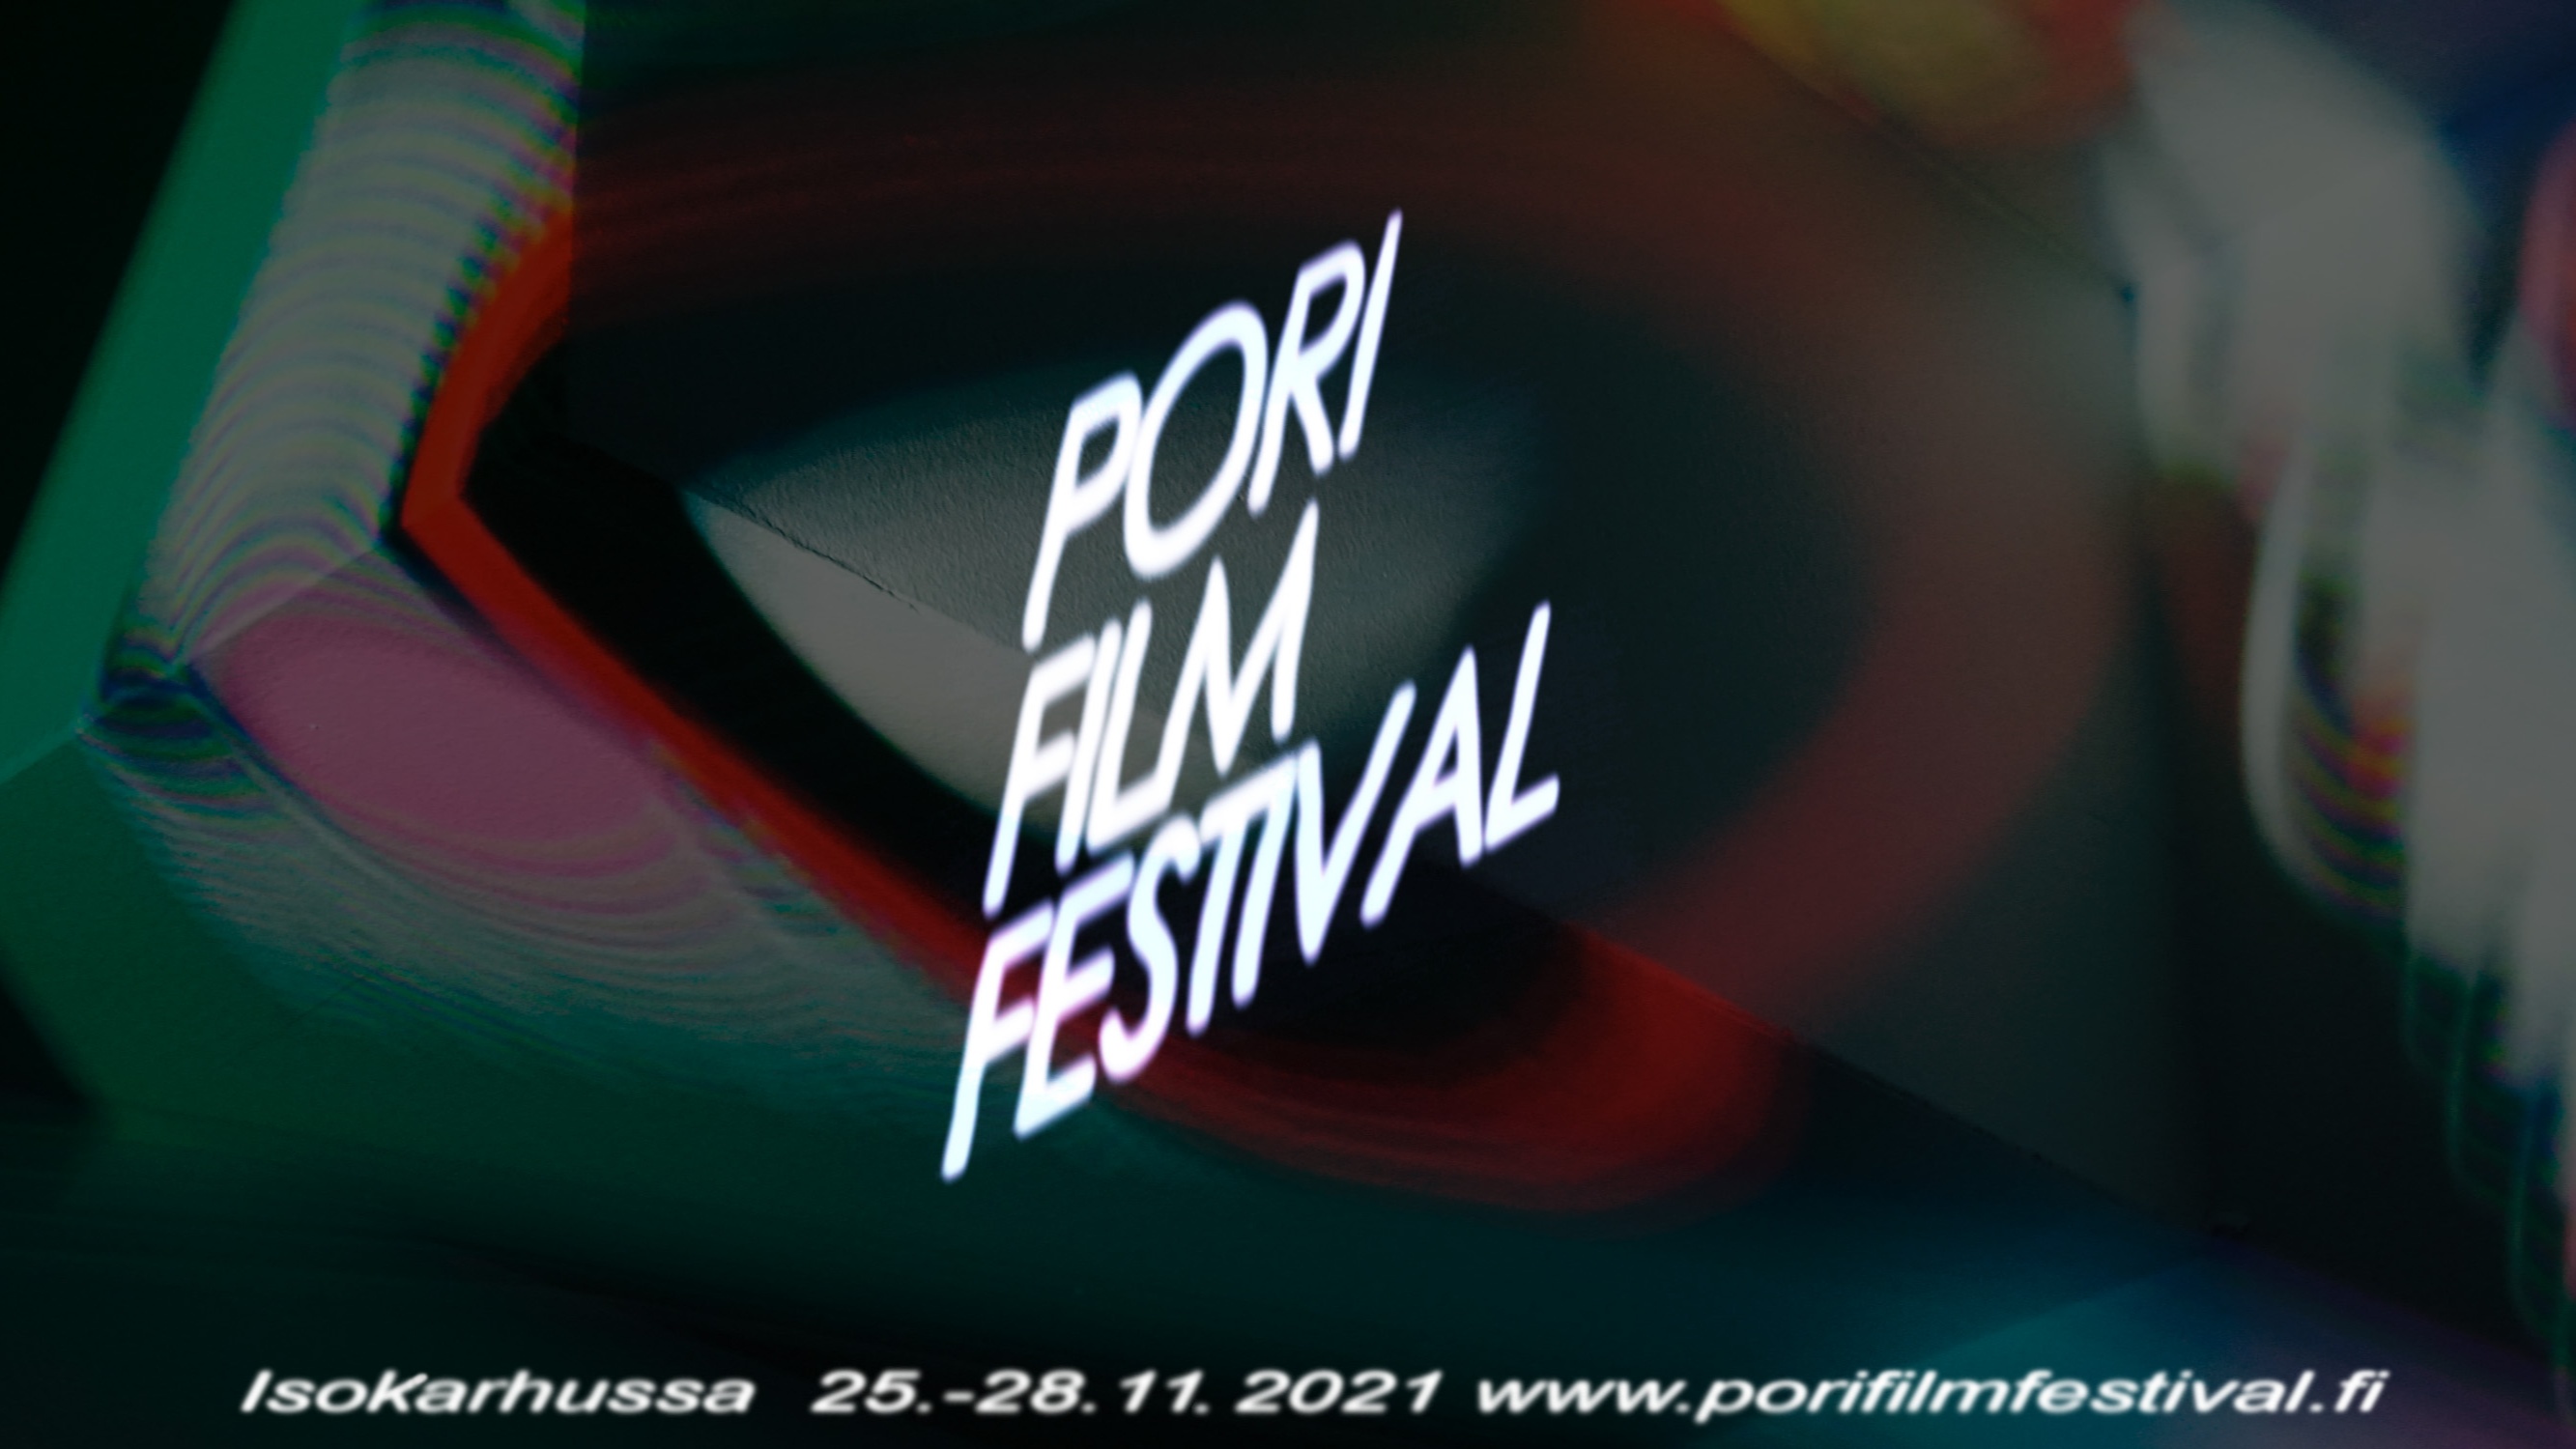 Pori Film Festival